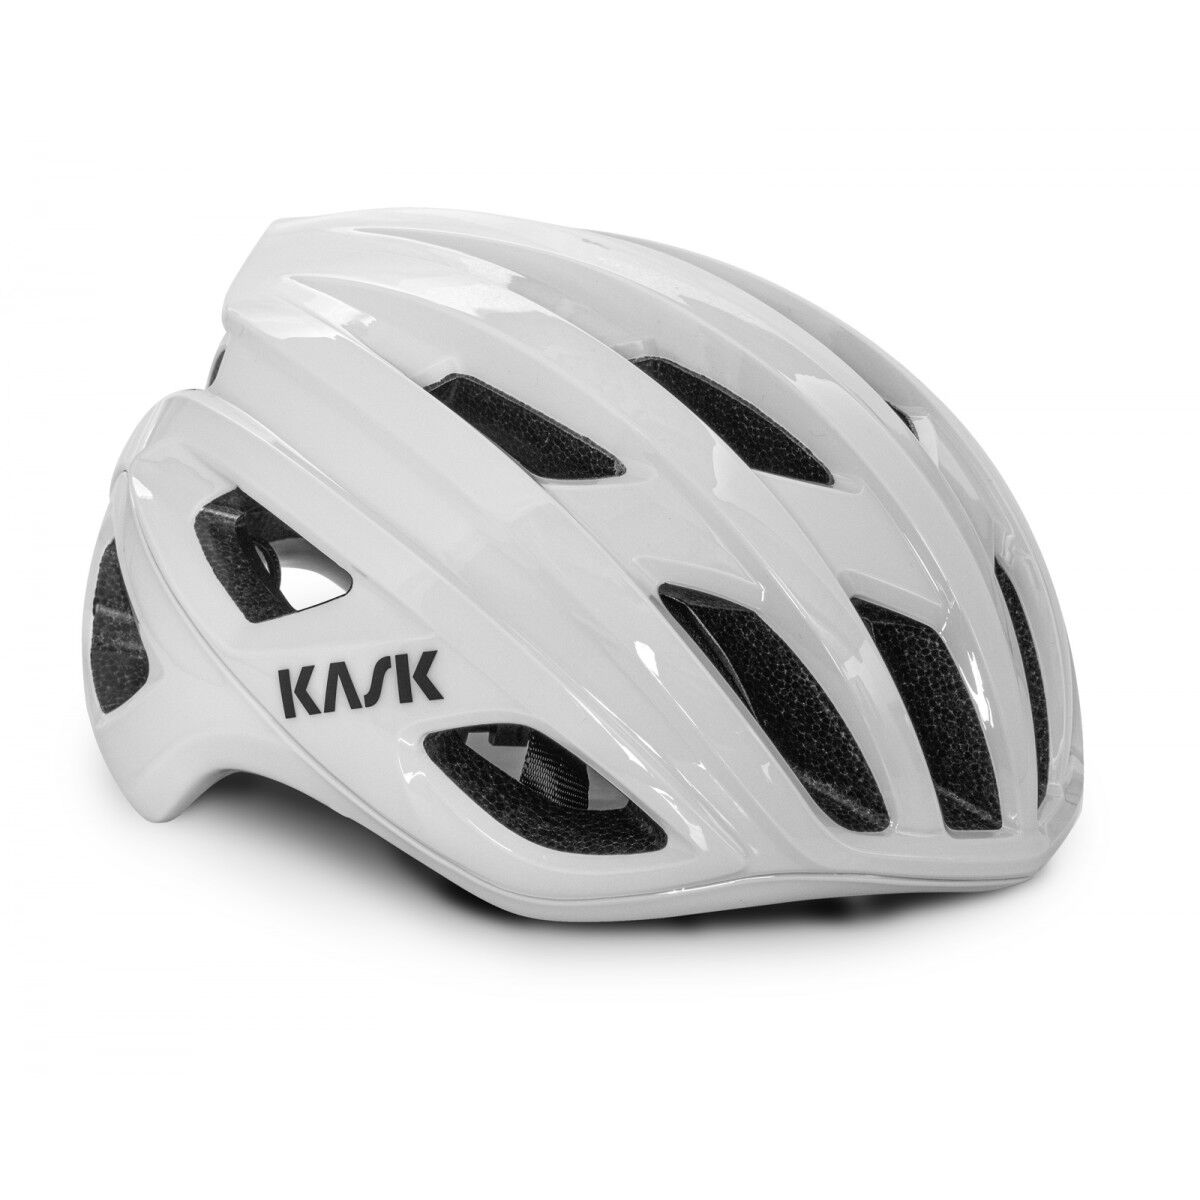 KASK Mojito3 WG11 - Road bike helmet